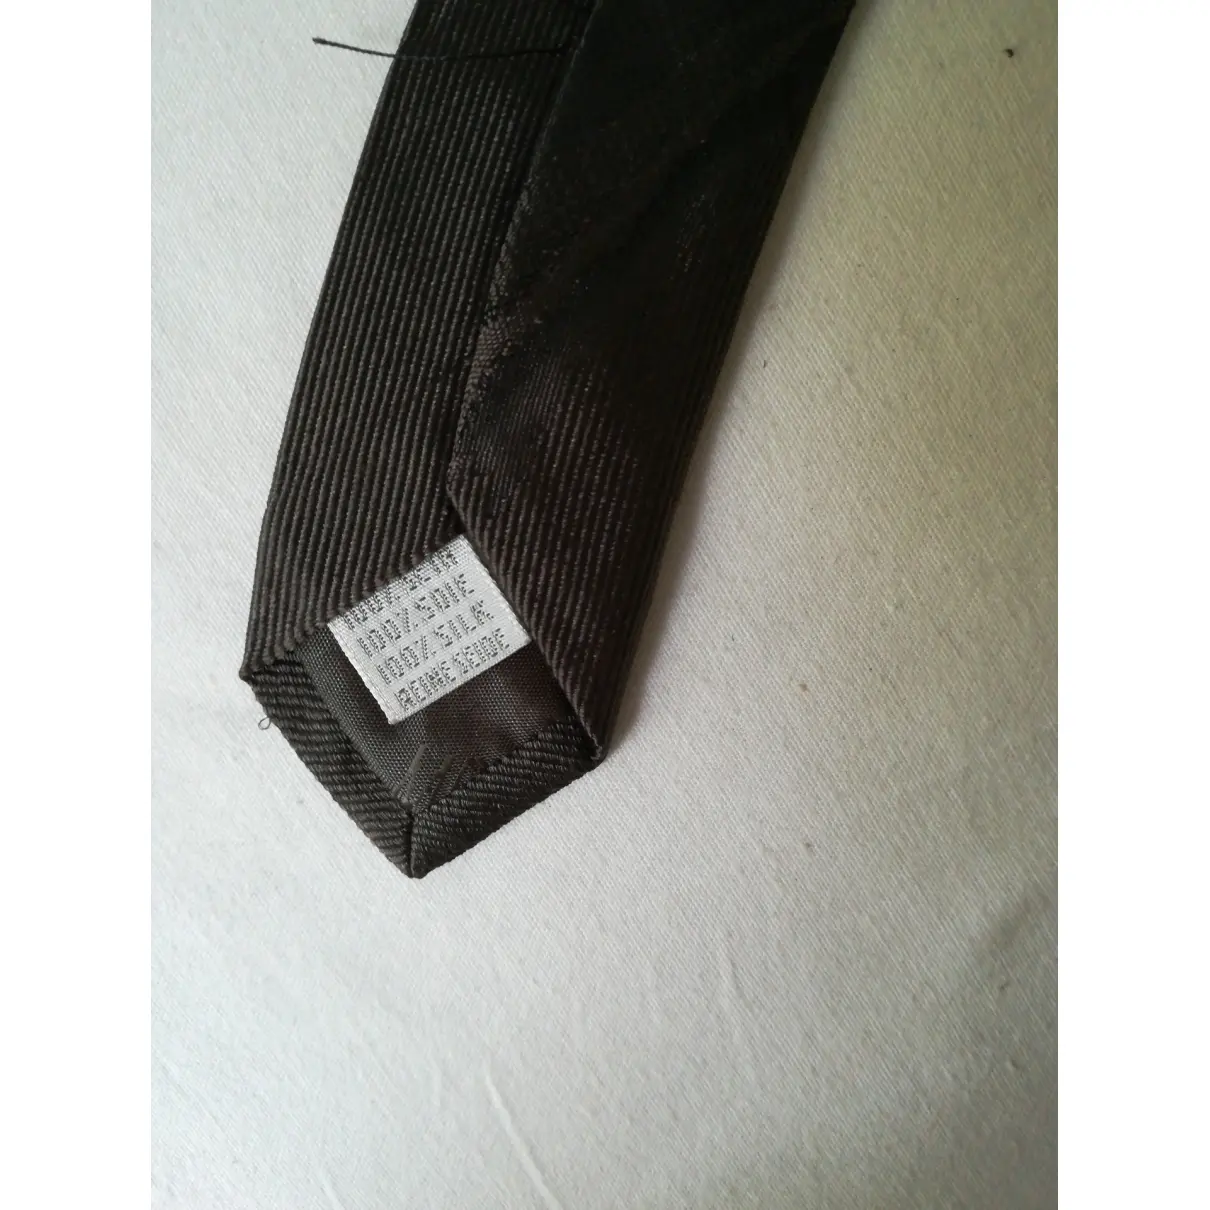 Buy Moschino Silk tie online - Vintage